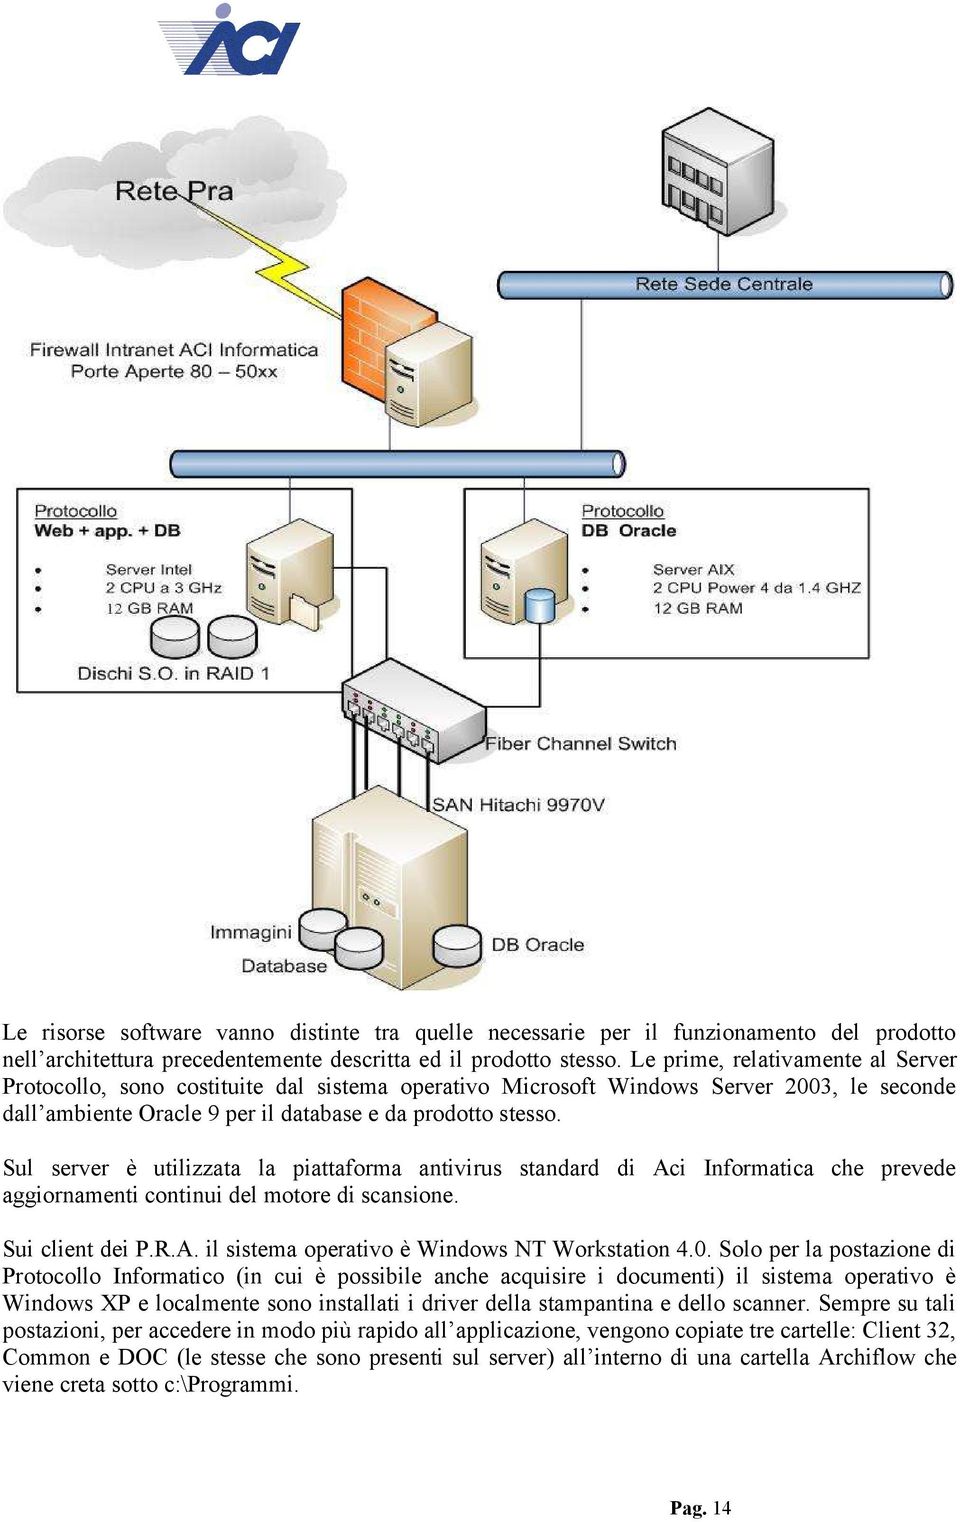 Sul server è utilizzata la piattaforma antivirus standard di Aci Informatica che prevede aggiornamenti continui del motore di scansione. Sui client dei P.R.A. il sistema operativo è Windows NT Workstation 4.